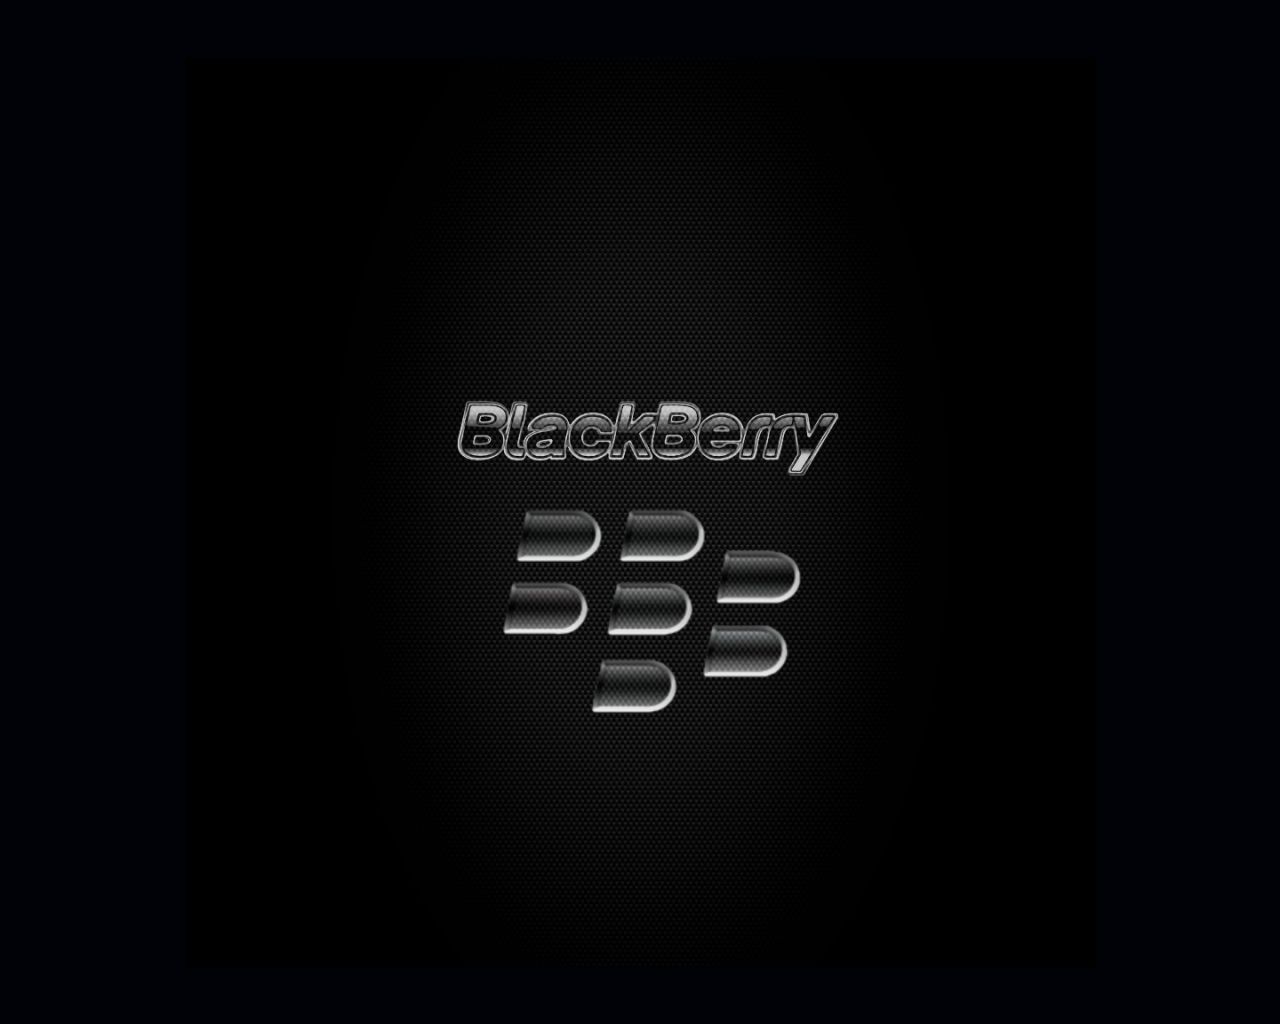 Free download BlackBerry Passport [1440x1440] for your Desktop